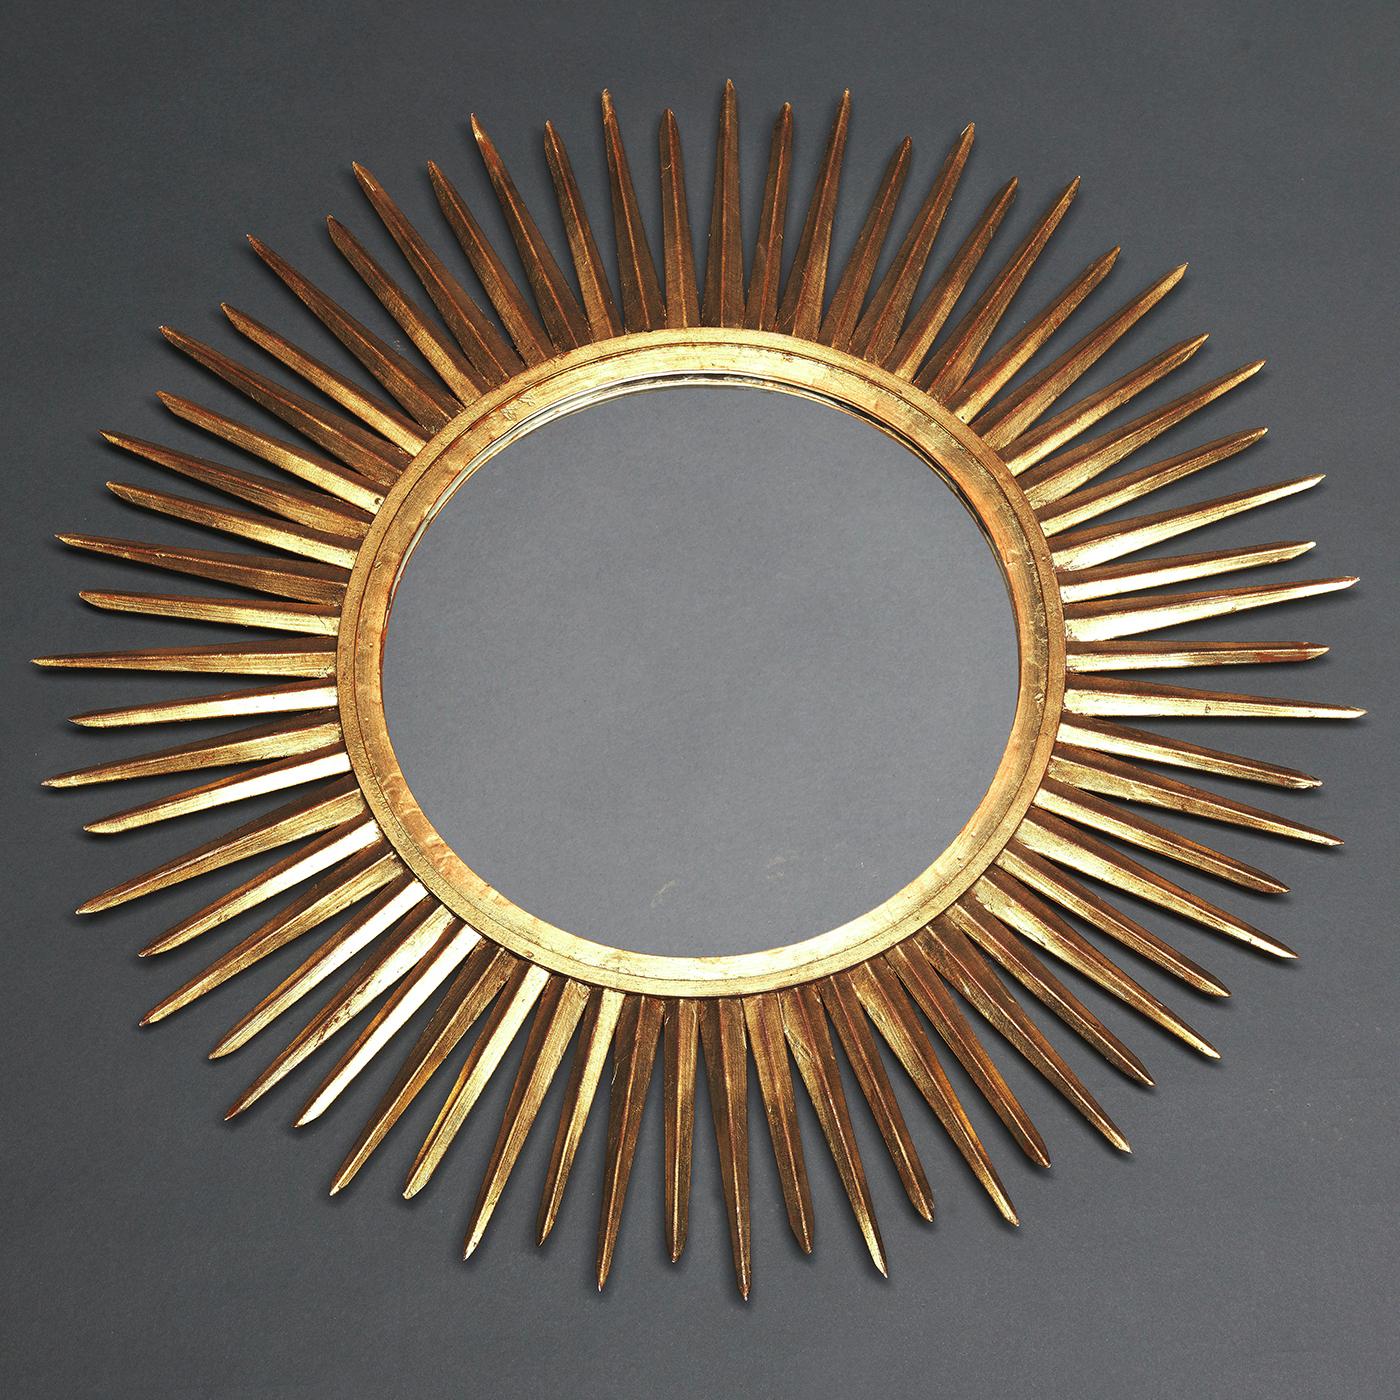 Dieser von der Renaissance inspirierte Spiegel strahlt Opulenz und zeitlosen Charme aus und ist treffend nach dem italienischen Wort für Sonne benannt. In der Form des Sterns, der unser Sonnensystem beleuchtet, besteht dieses prächtige Stück aus